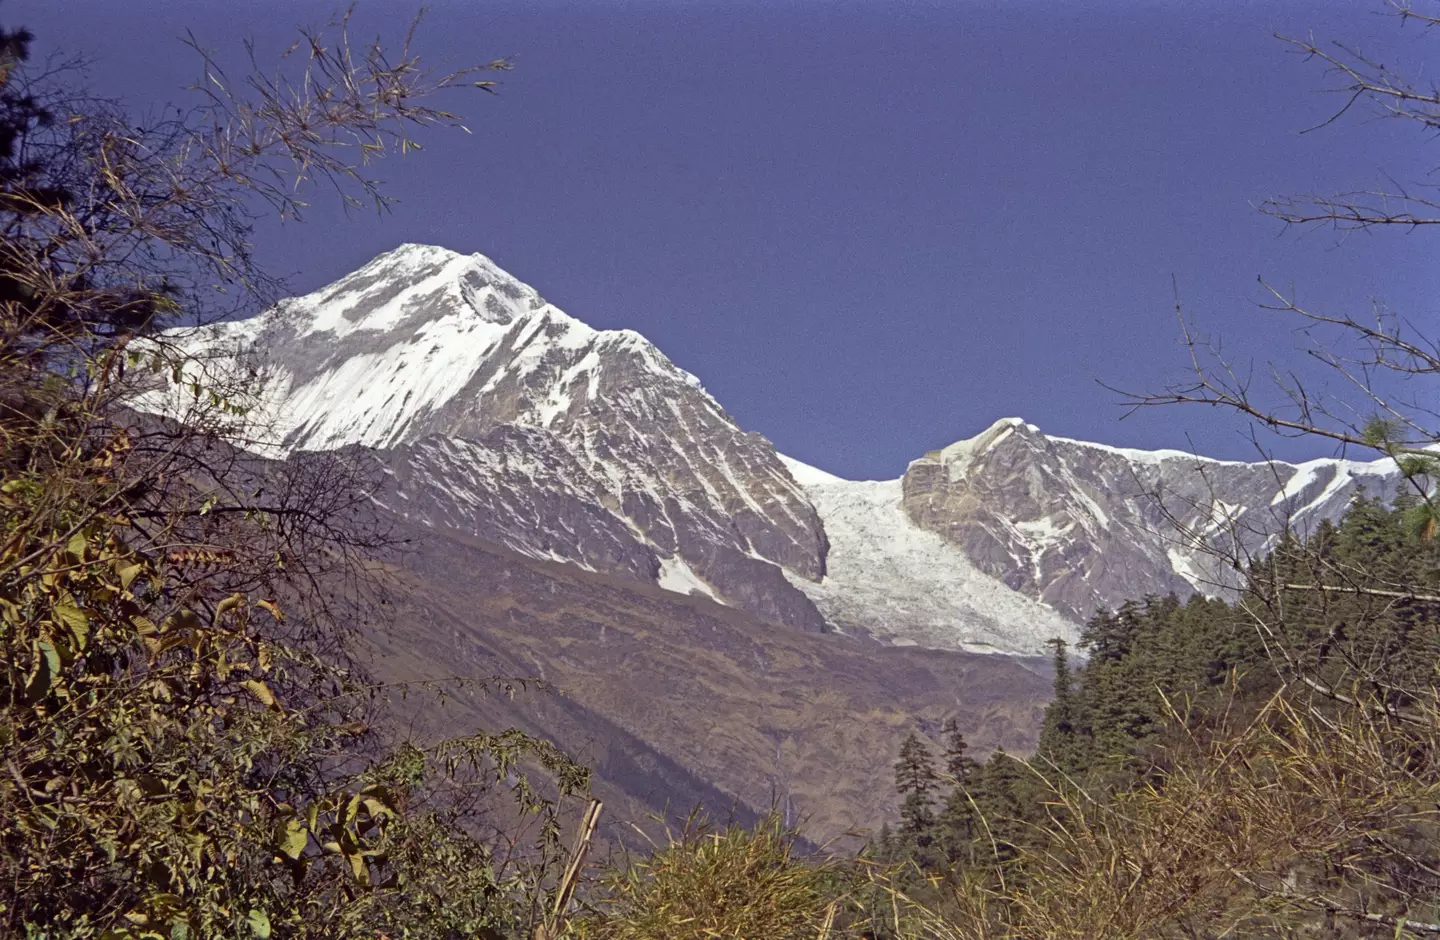 Mountain peaks in Nepal.